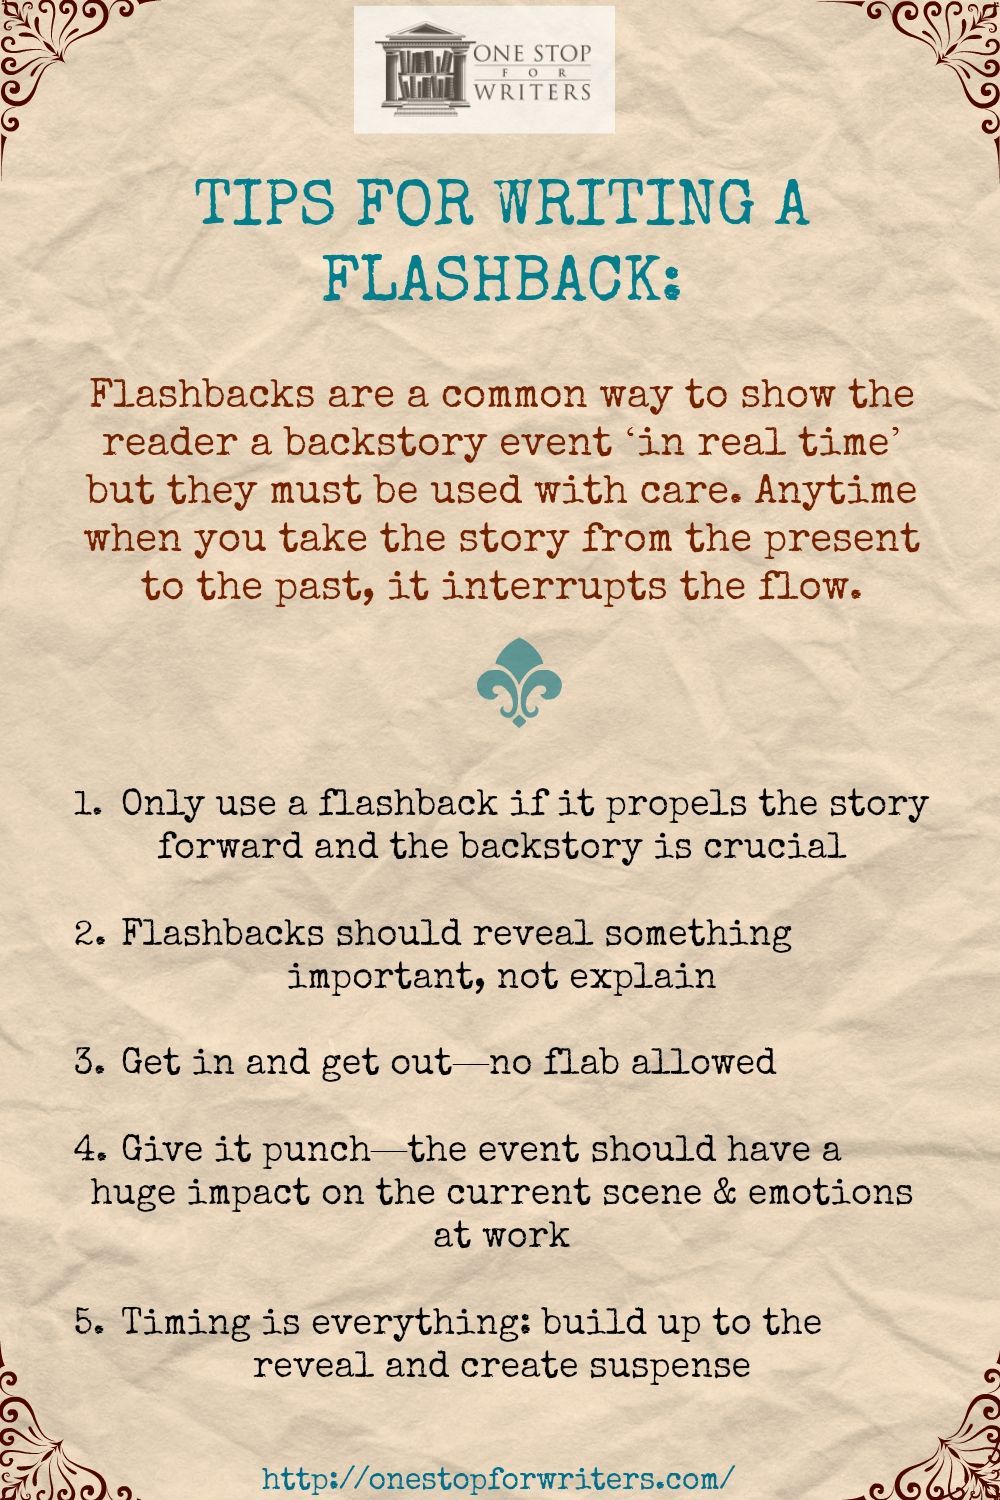 Tips for writing flashbacks